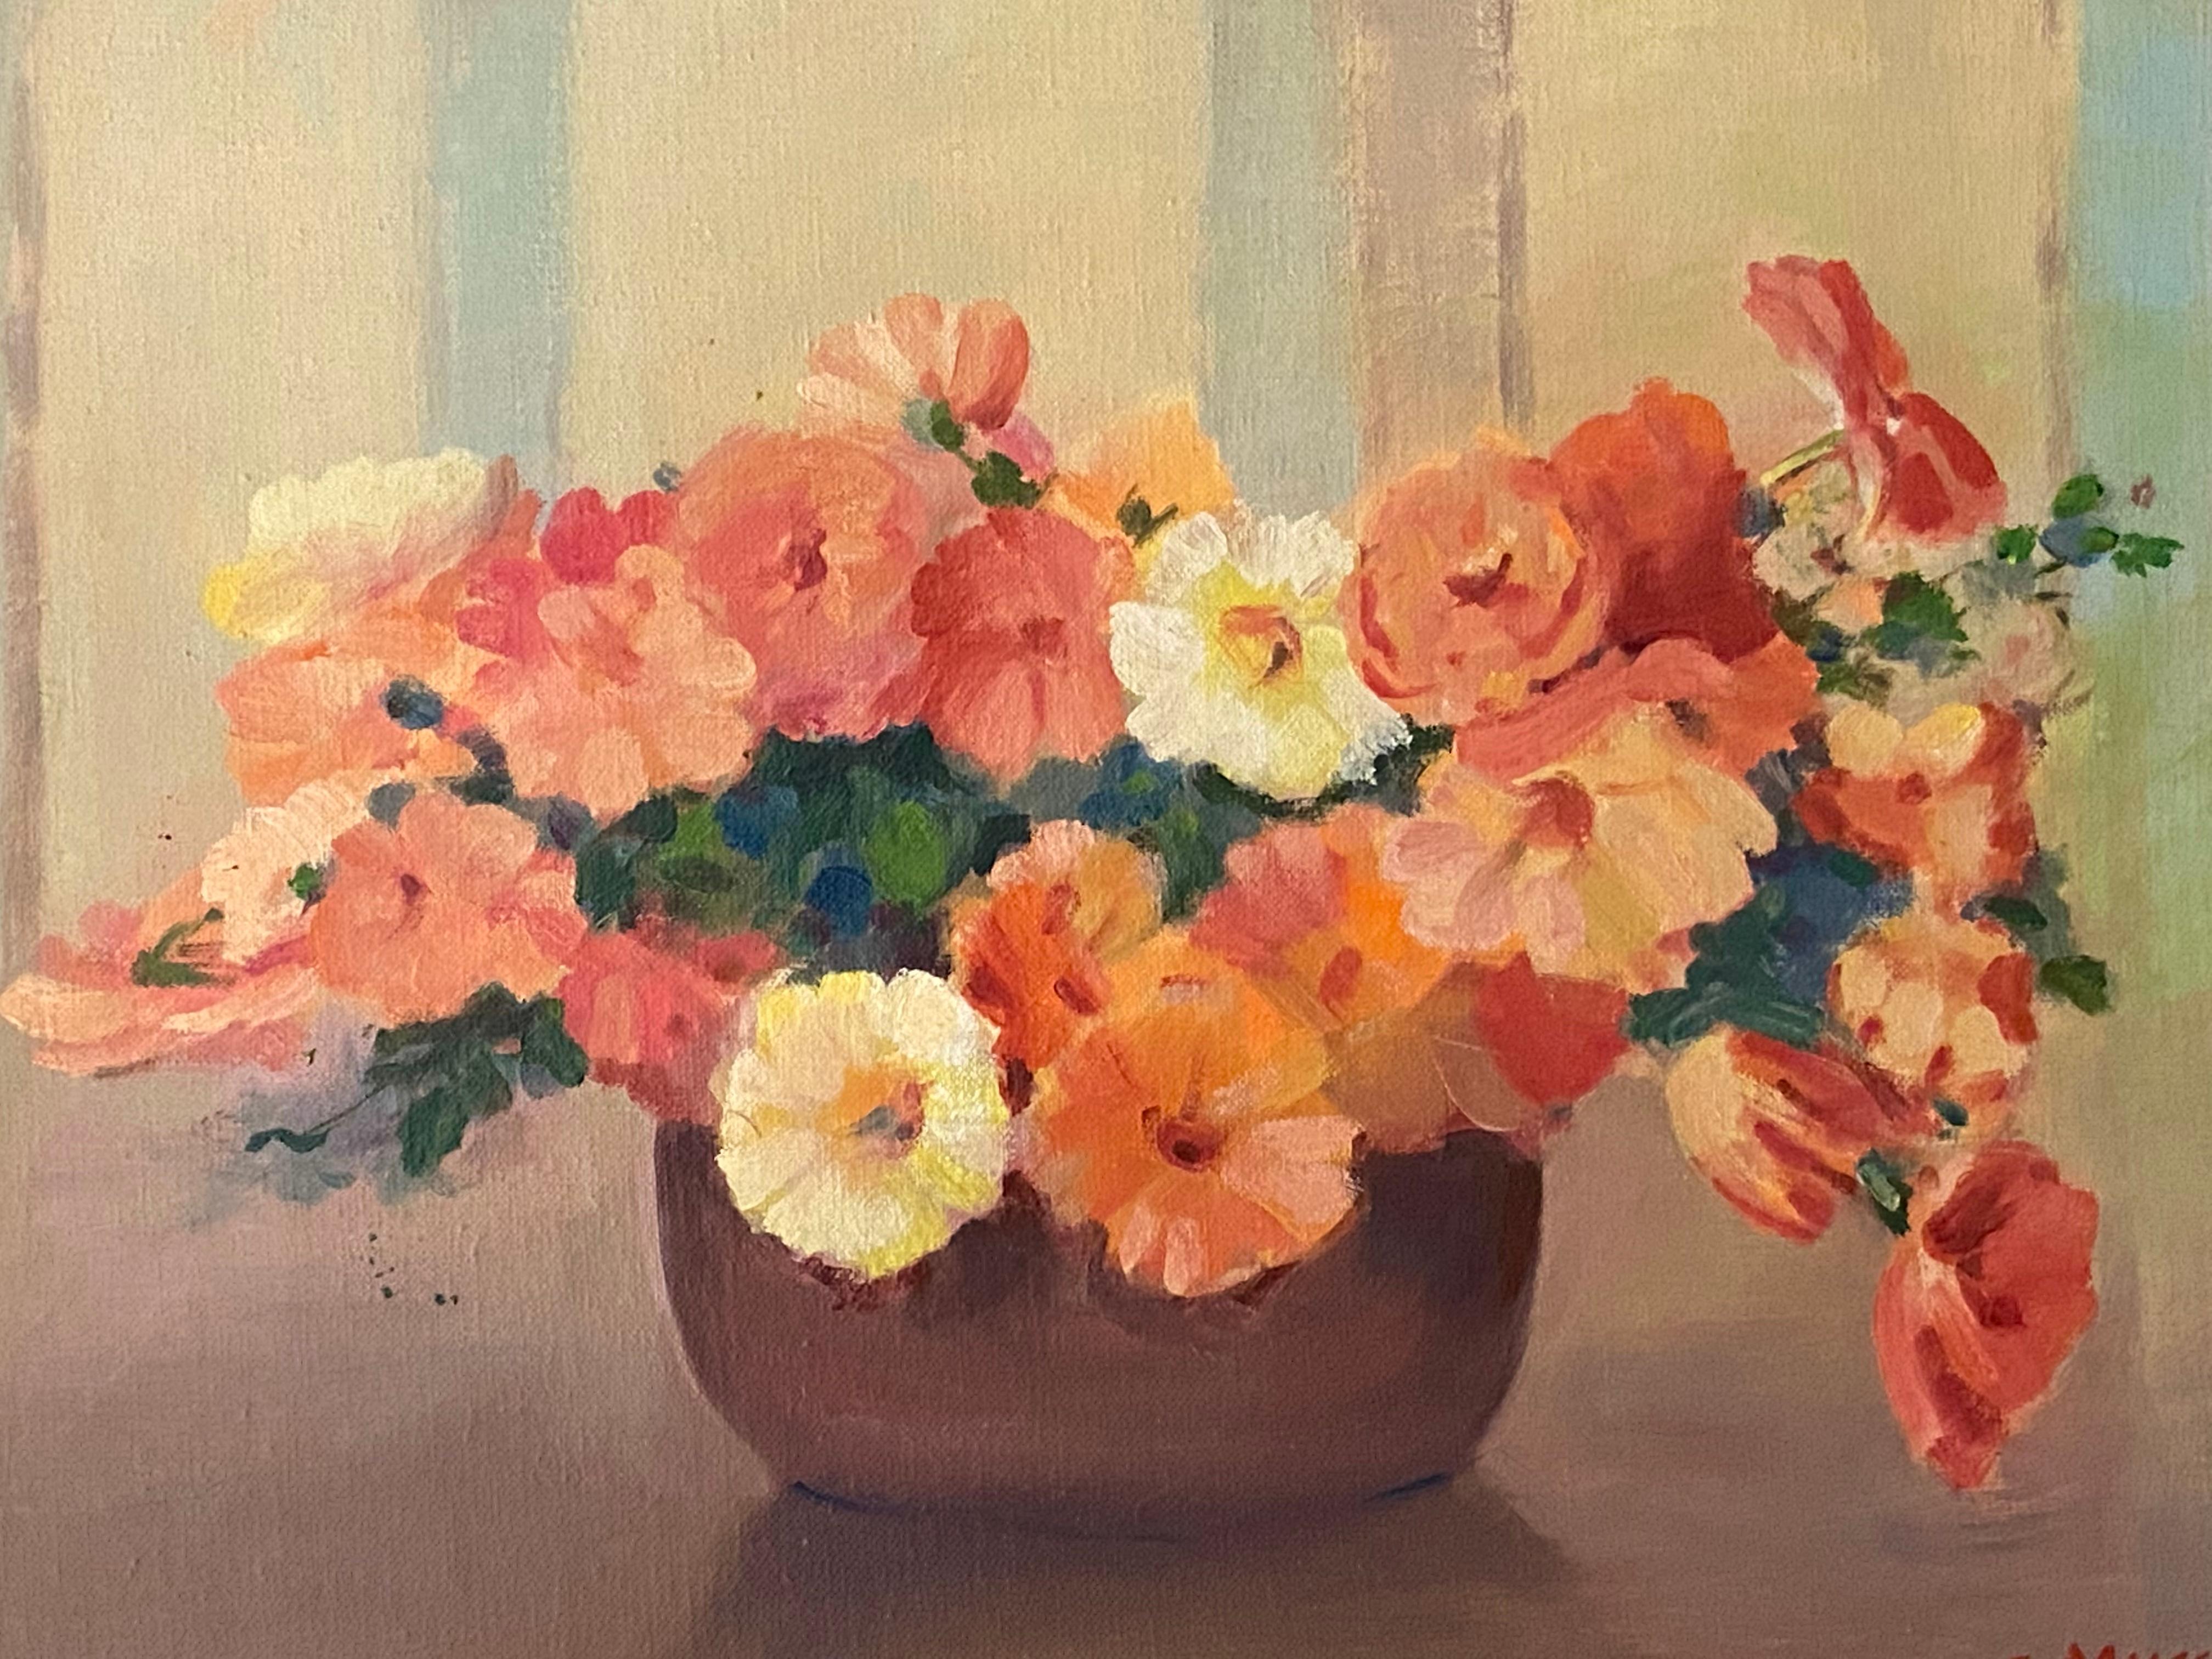 Blumenstrauß von Petunias (Braun), Still-Life Painting, von SAMUEL MIRSKY